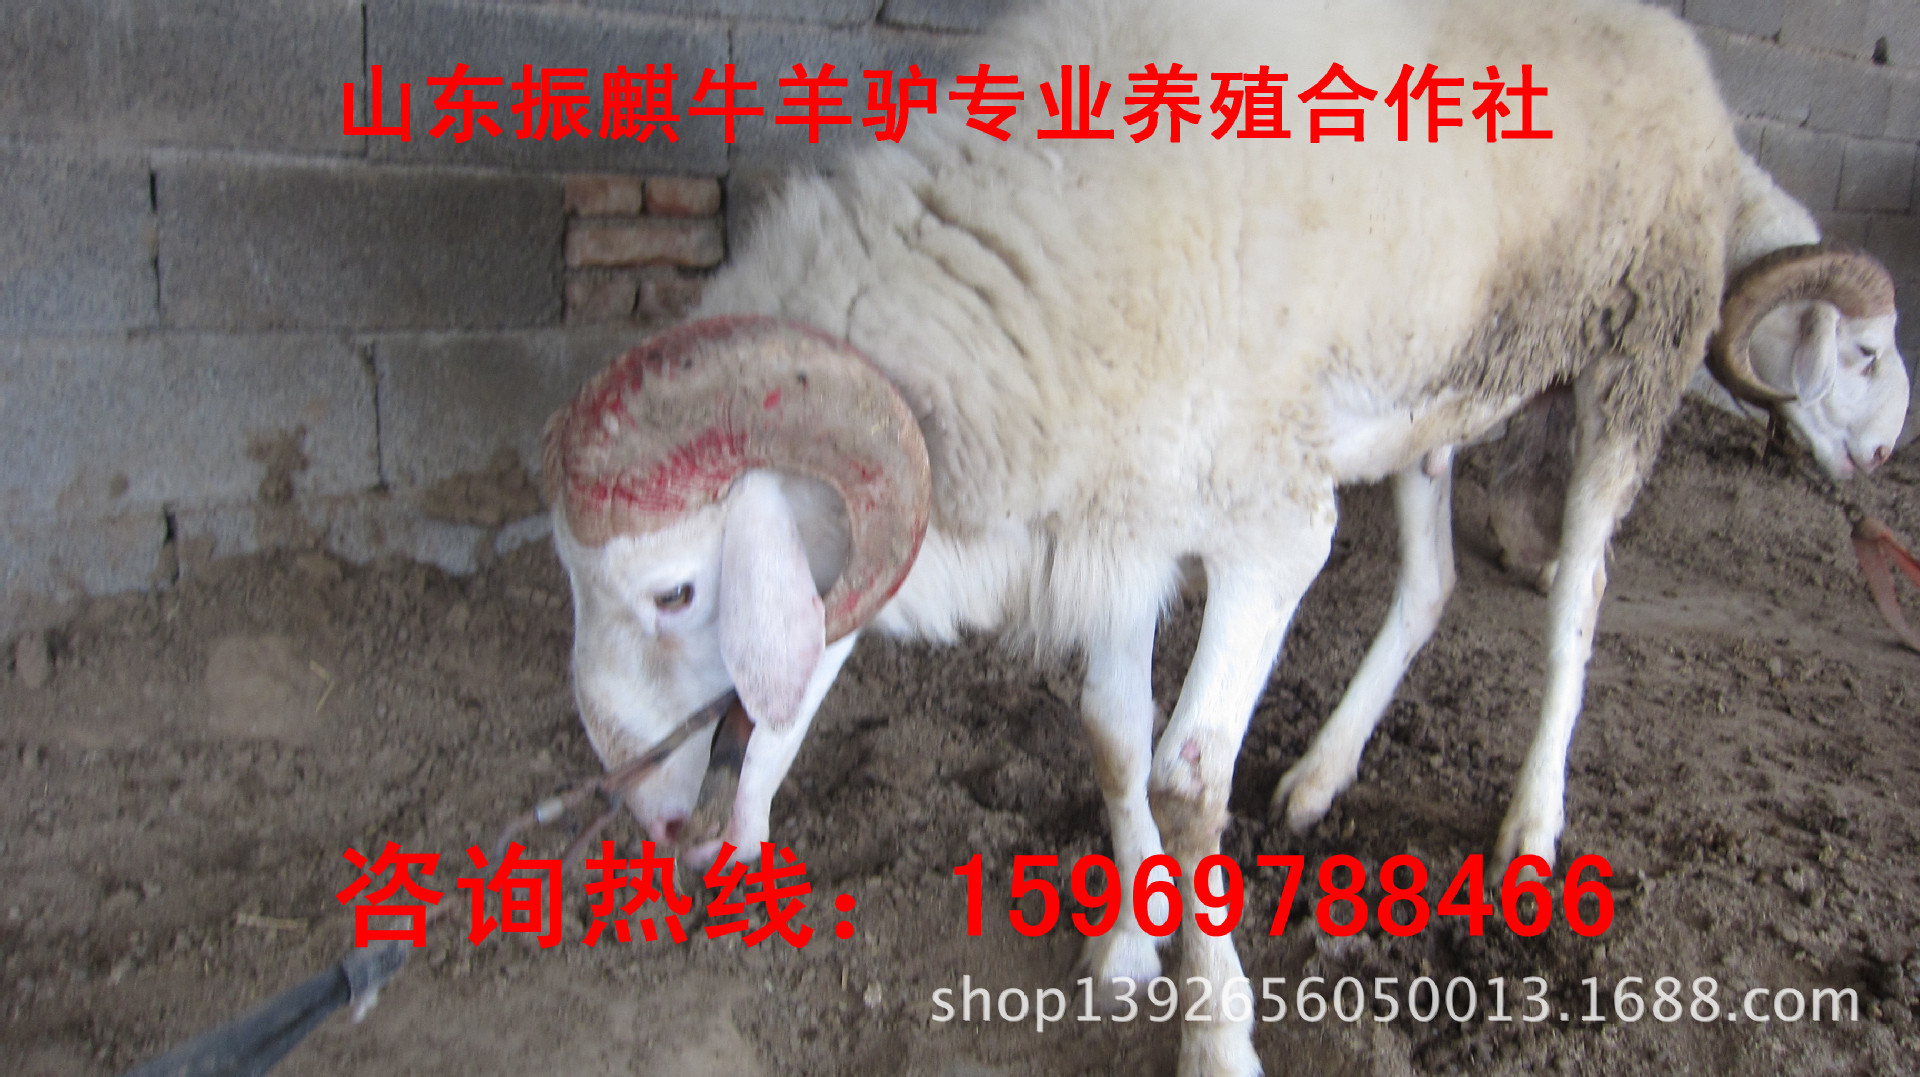 羊-安徽安庆小尾寒羊齐全去哪买羊不会被骗 哪